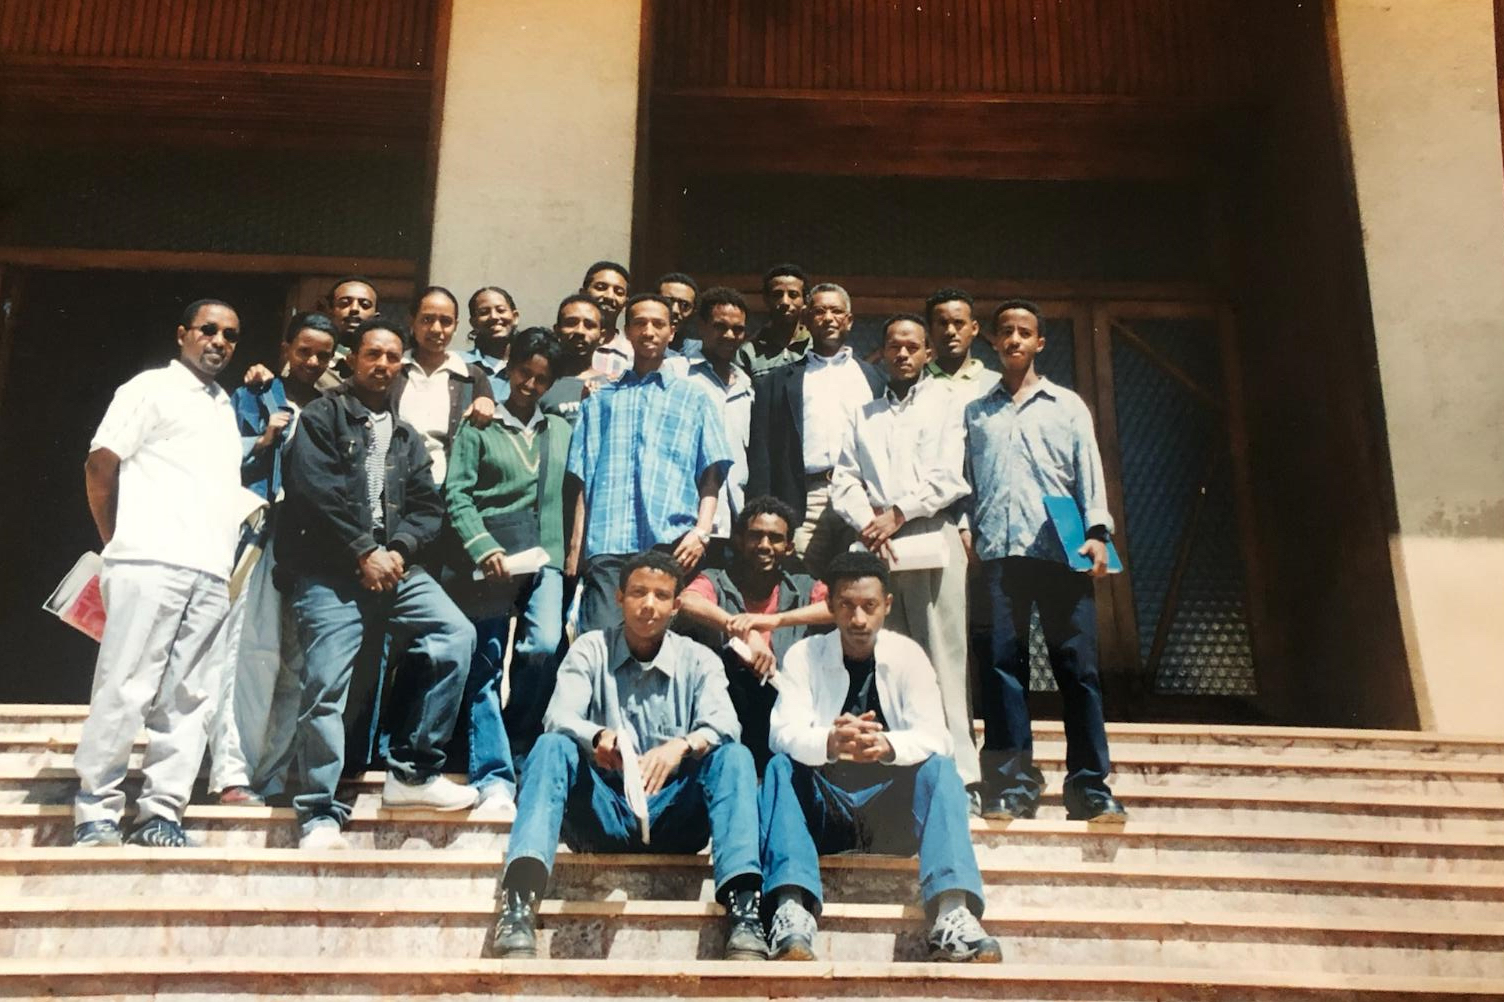 Ghirmai Negash avec sa classe d'étudiants en journalisme à l'Université d'Asmara, 2001-02